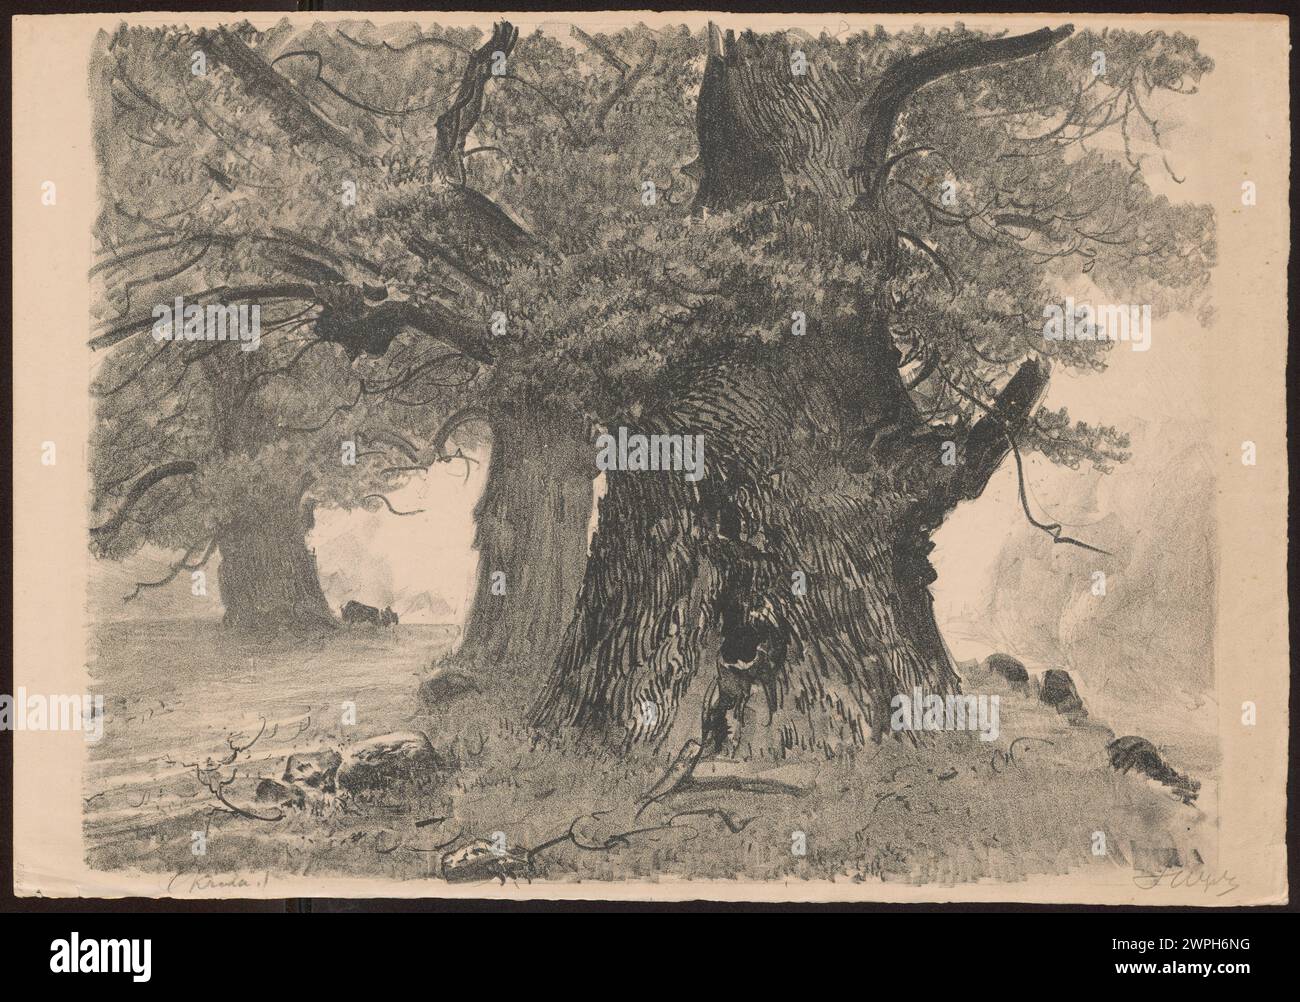 Nella Foresta Bianca; Wyczóżó Kowski, Leon (1852-1936); 1922 (1922-00-00-1922-00-00-00); Puszcza Białowieża, Wyczółkowski, Leon (1852-1936), Wyczółkowski, Leon (1852-1936)-collezione, alberi, querce, grafica polacca, perdite di guerra recuperate, Polonia (cultura), messaggio (provenienza), acquisto (provenienza), Żubry Foto Stock